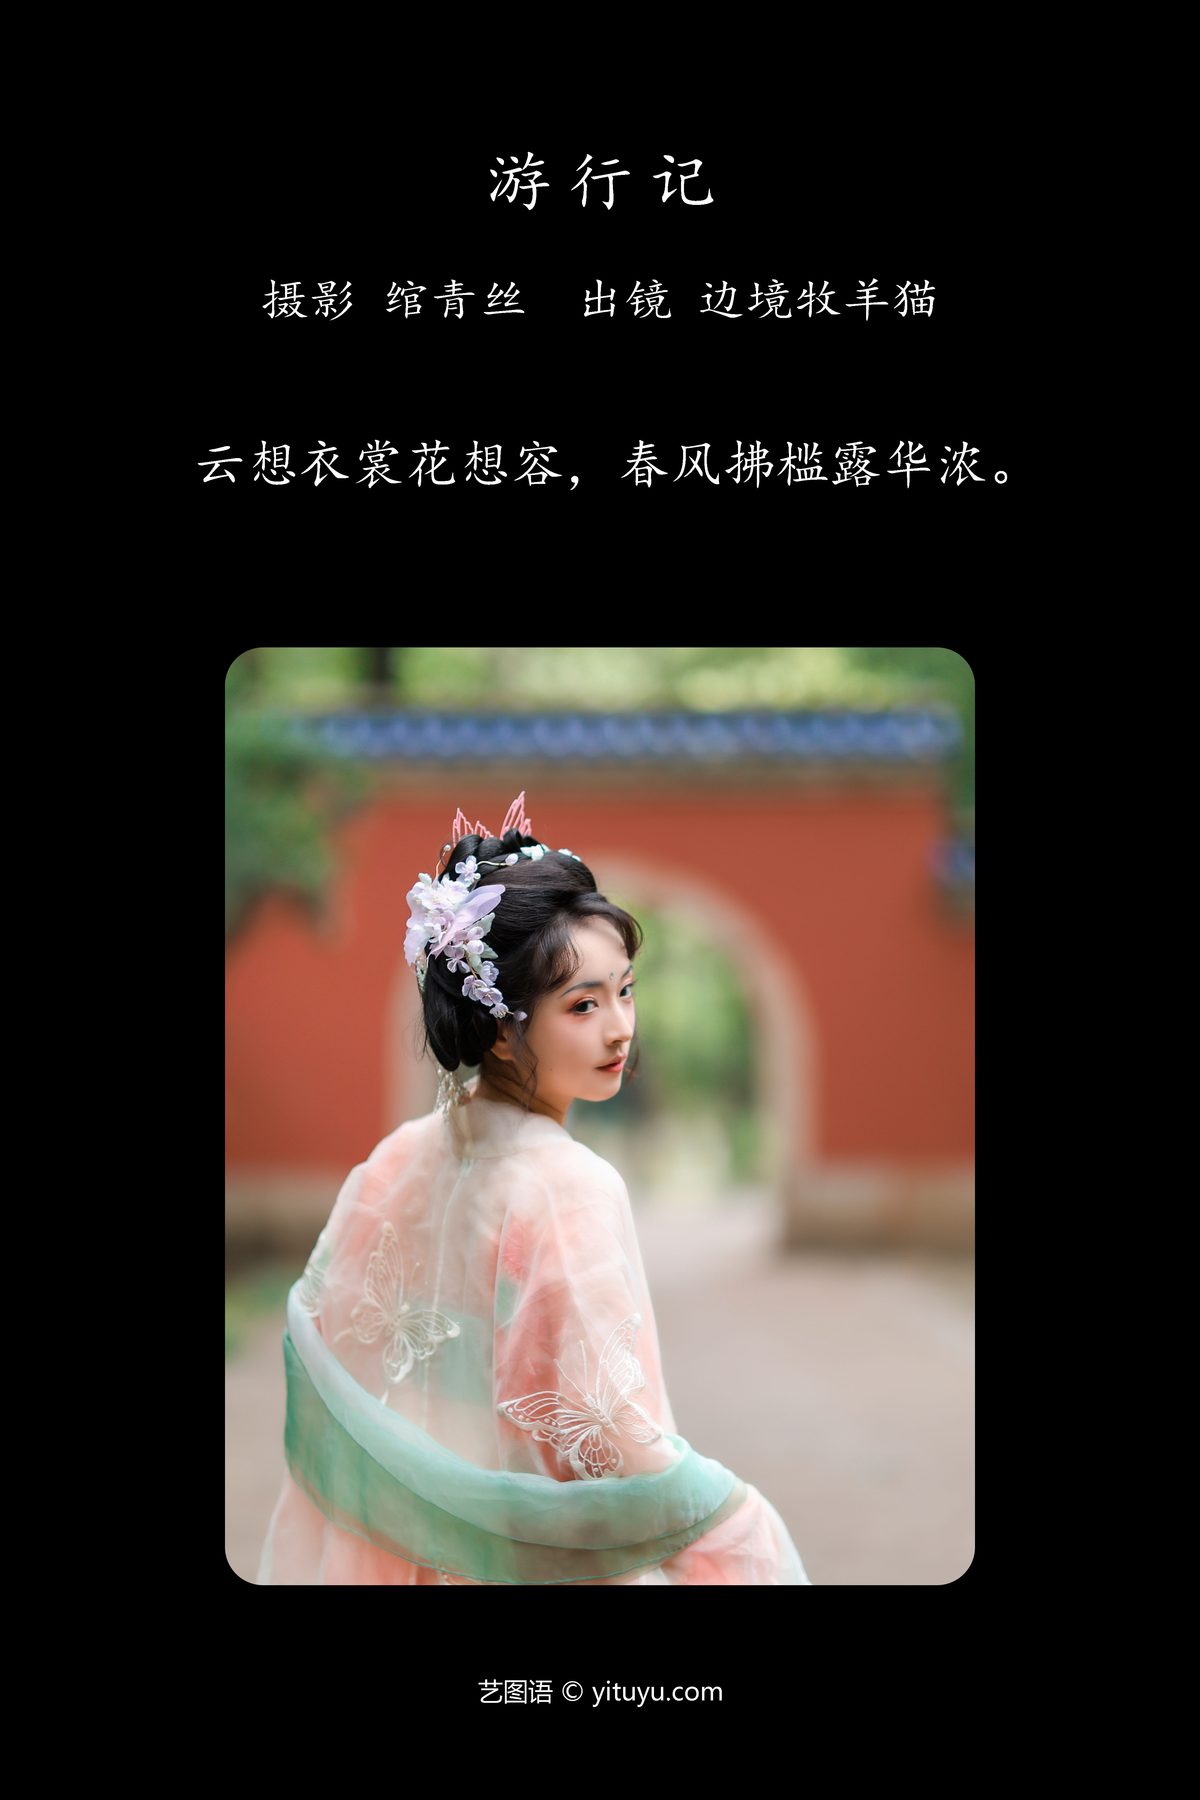 YiTuYu艺图语 Vol 5364 Bian Jing Mu Yang Mao 0002 6948403750.jpg